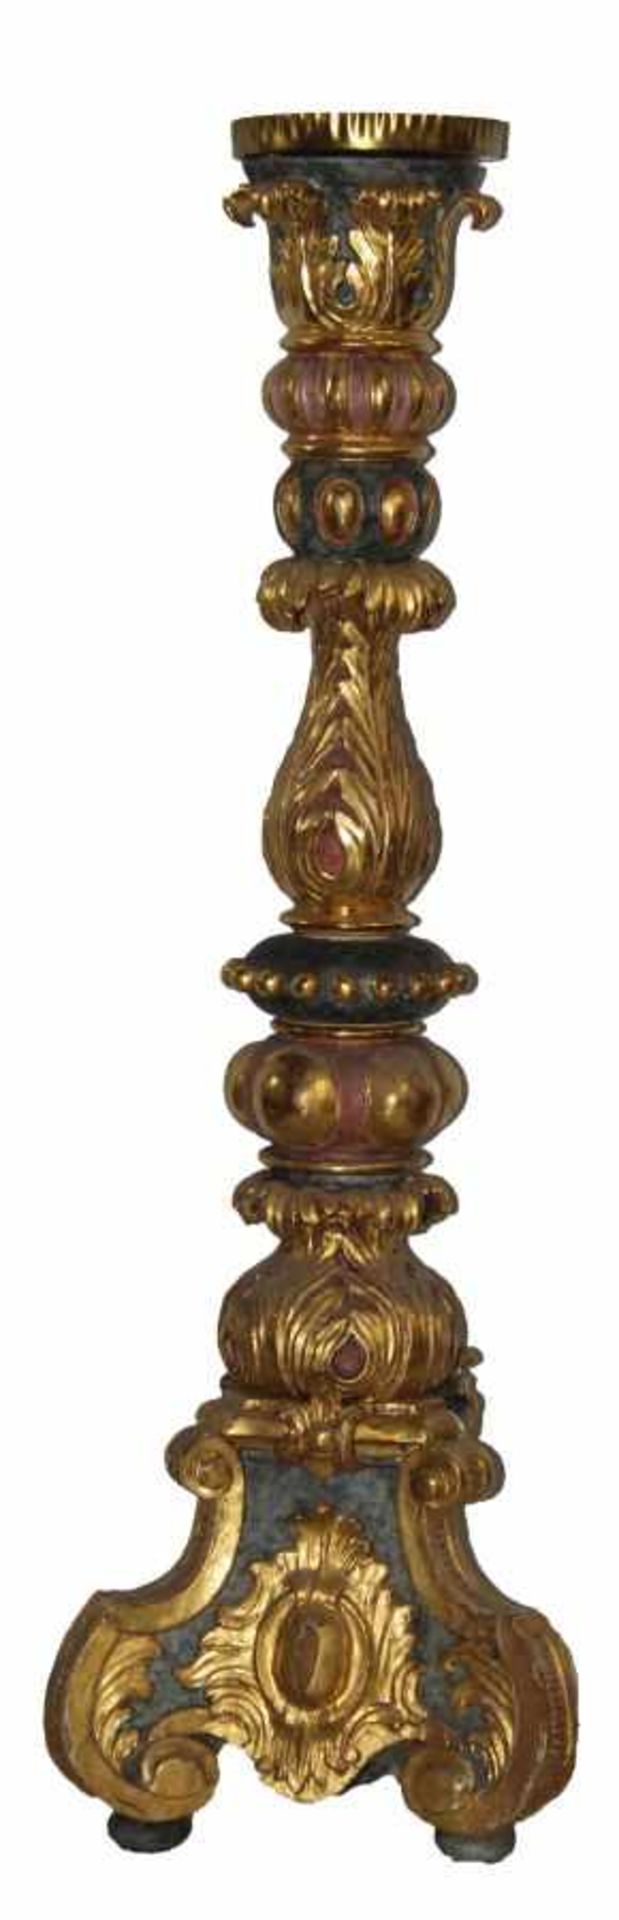 Großer Kerzenleuchter im Barockstil Holz geschnitzt, gefaßt und vergoldet, 1-flammig, verziert mit